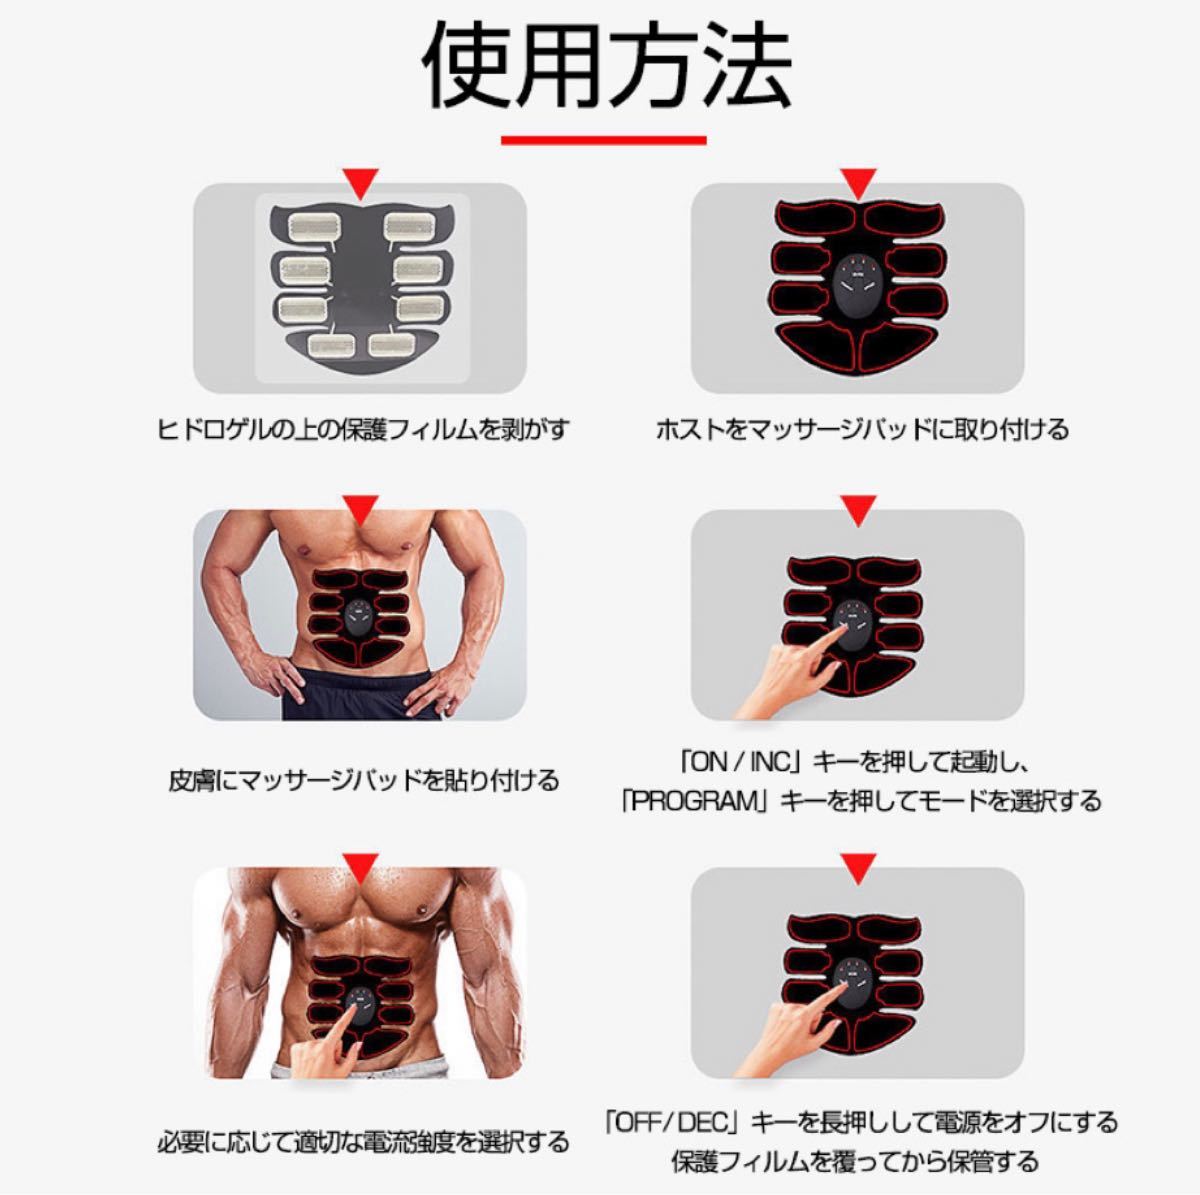 新品EMSパルス腹筋マッサージパッドUSB充電式 腹筋 腕筋 自宅用筋トレ器具 腹筋トレーニング ダイエット 充電式 男女兼用